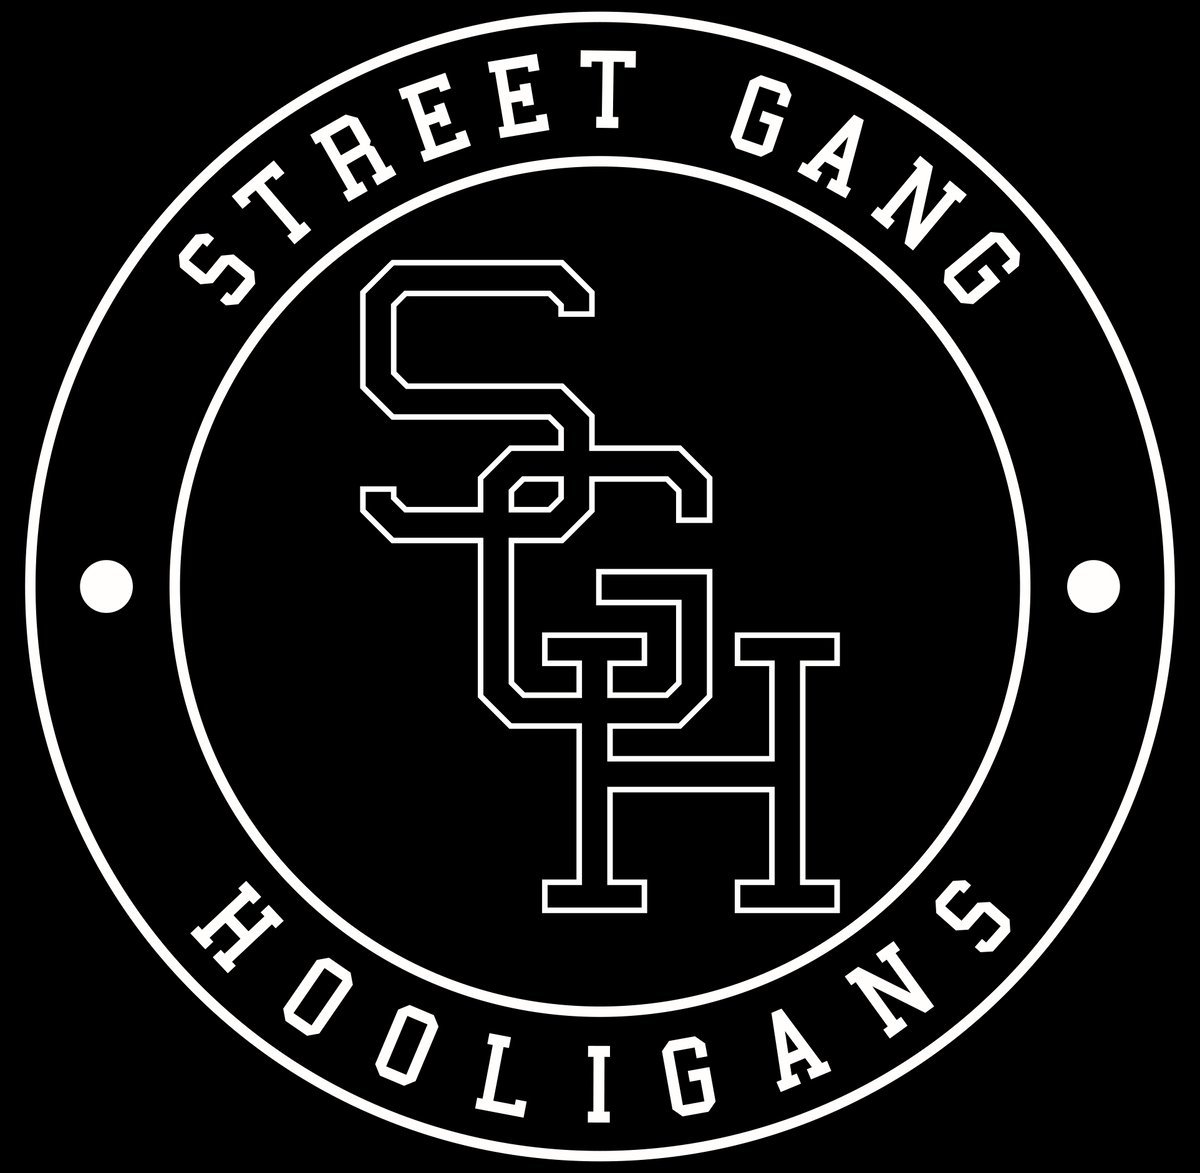 street gang logos